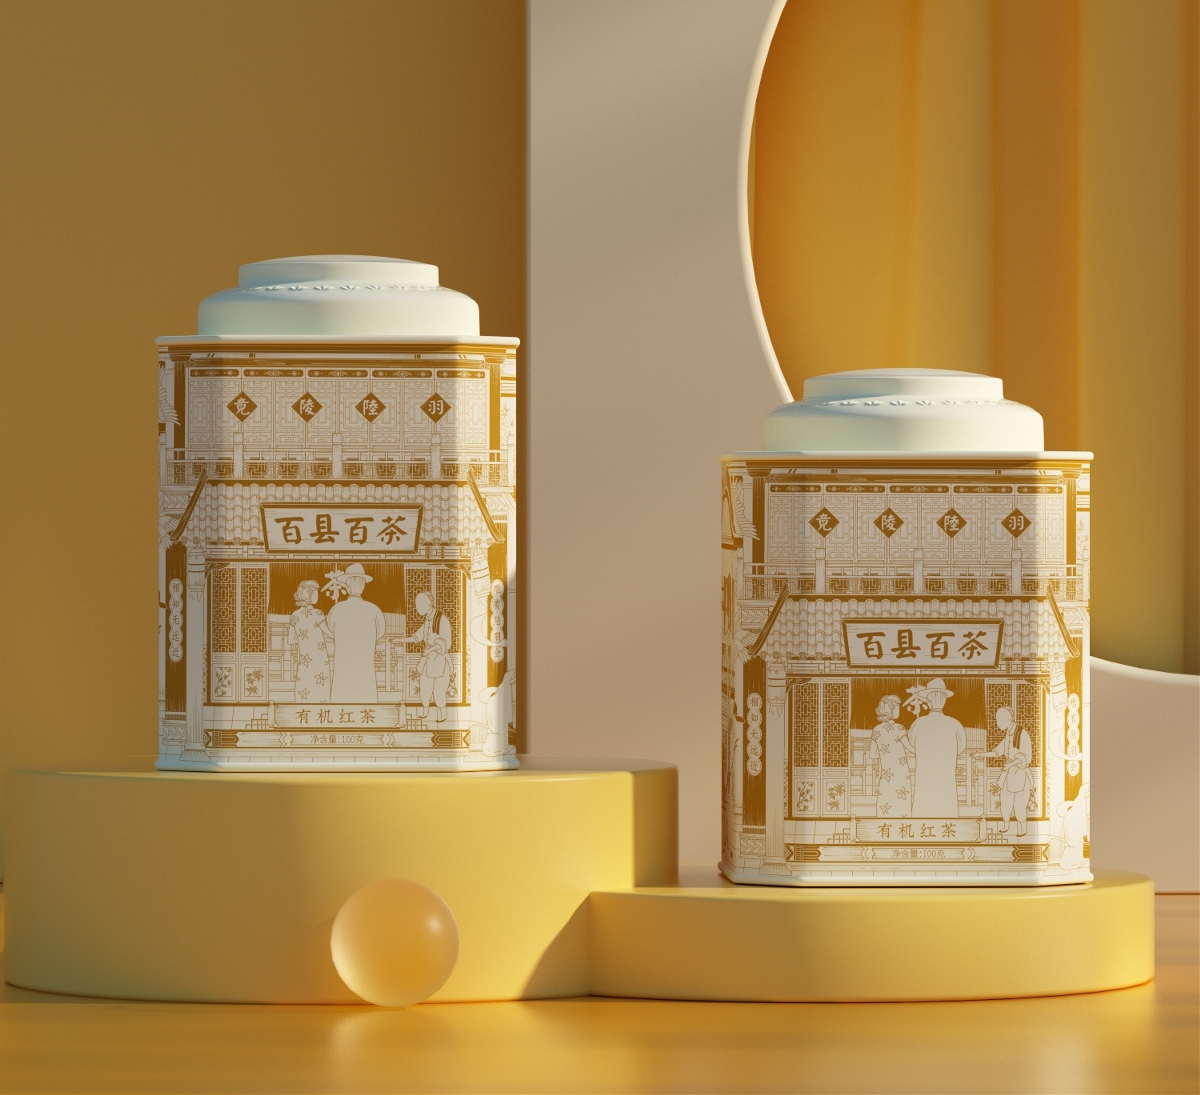 民国风茶叶包装礼盒设计